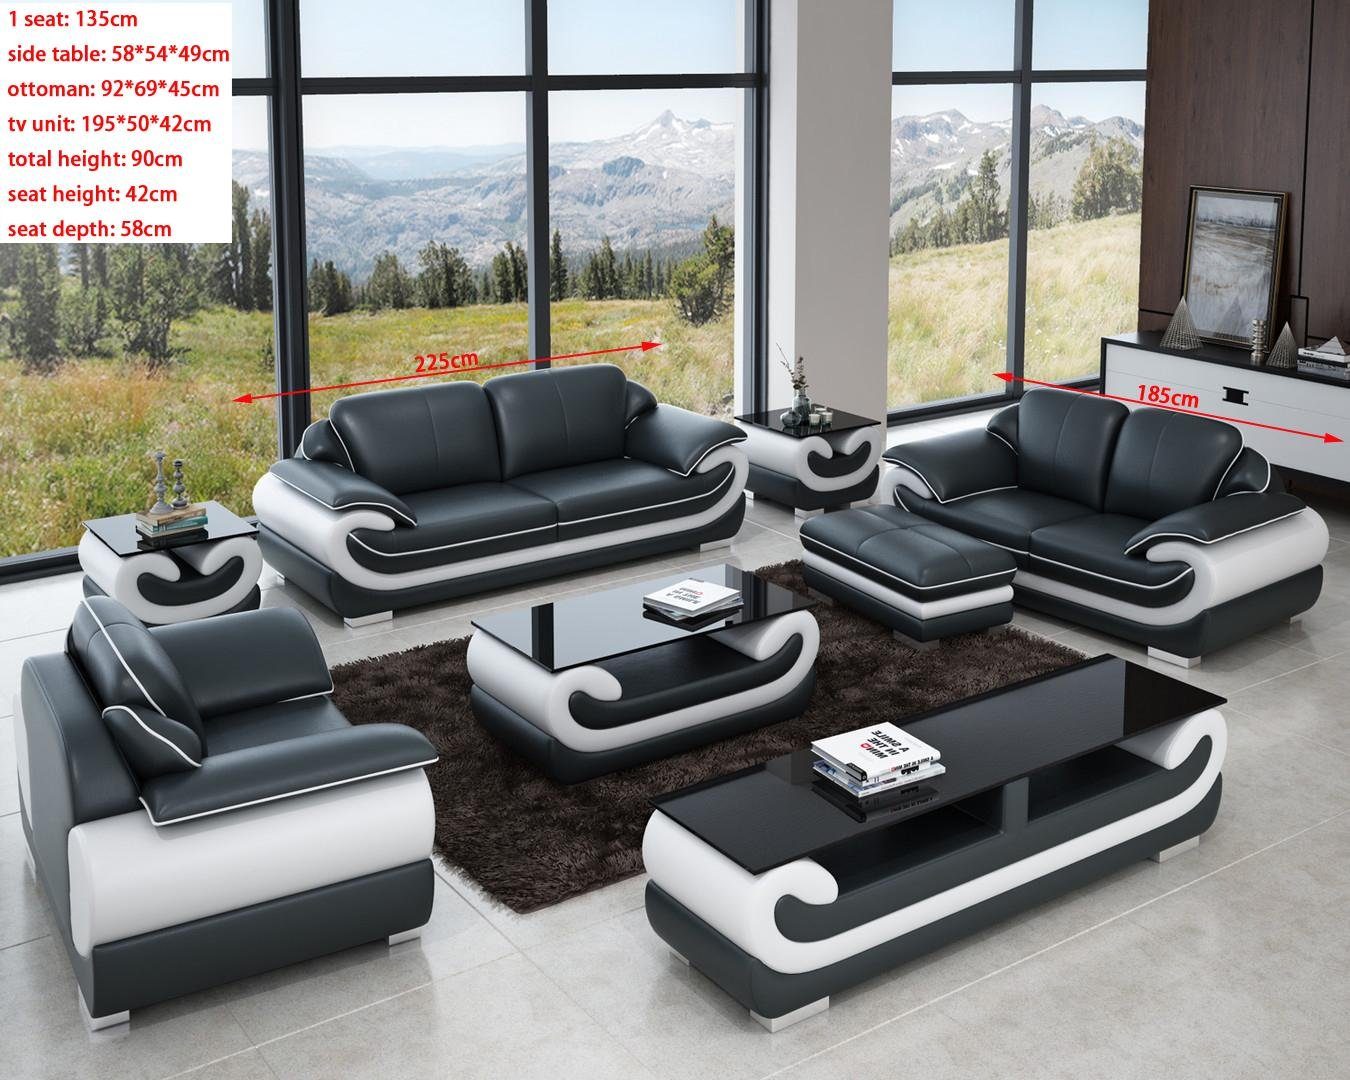 JVmoebel Sofa Sofas Relax, Grau/Weiß Sitzer Sofas Made in Polster Europe Design Couchen Leder 3+2+1 Set